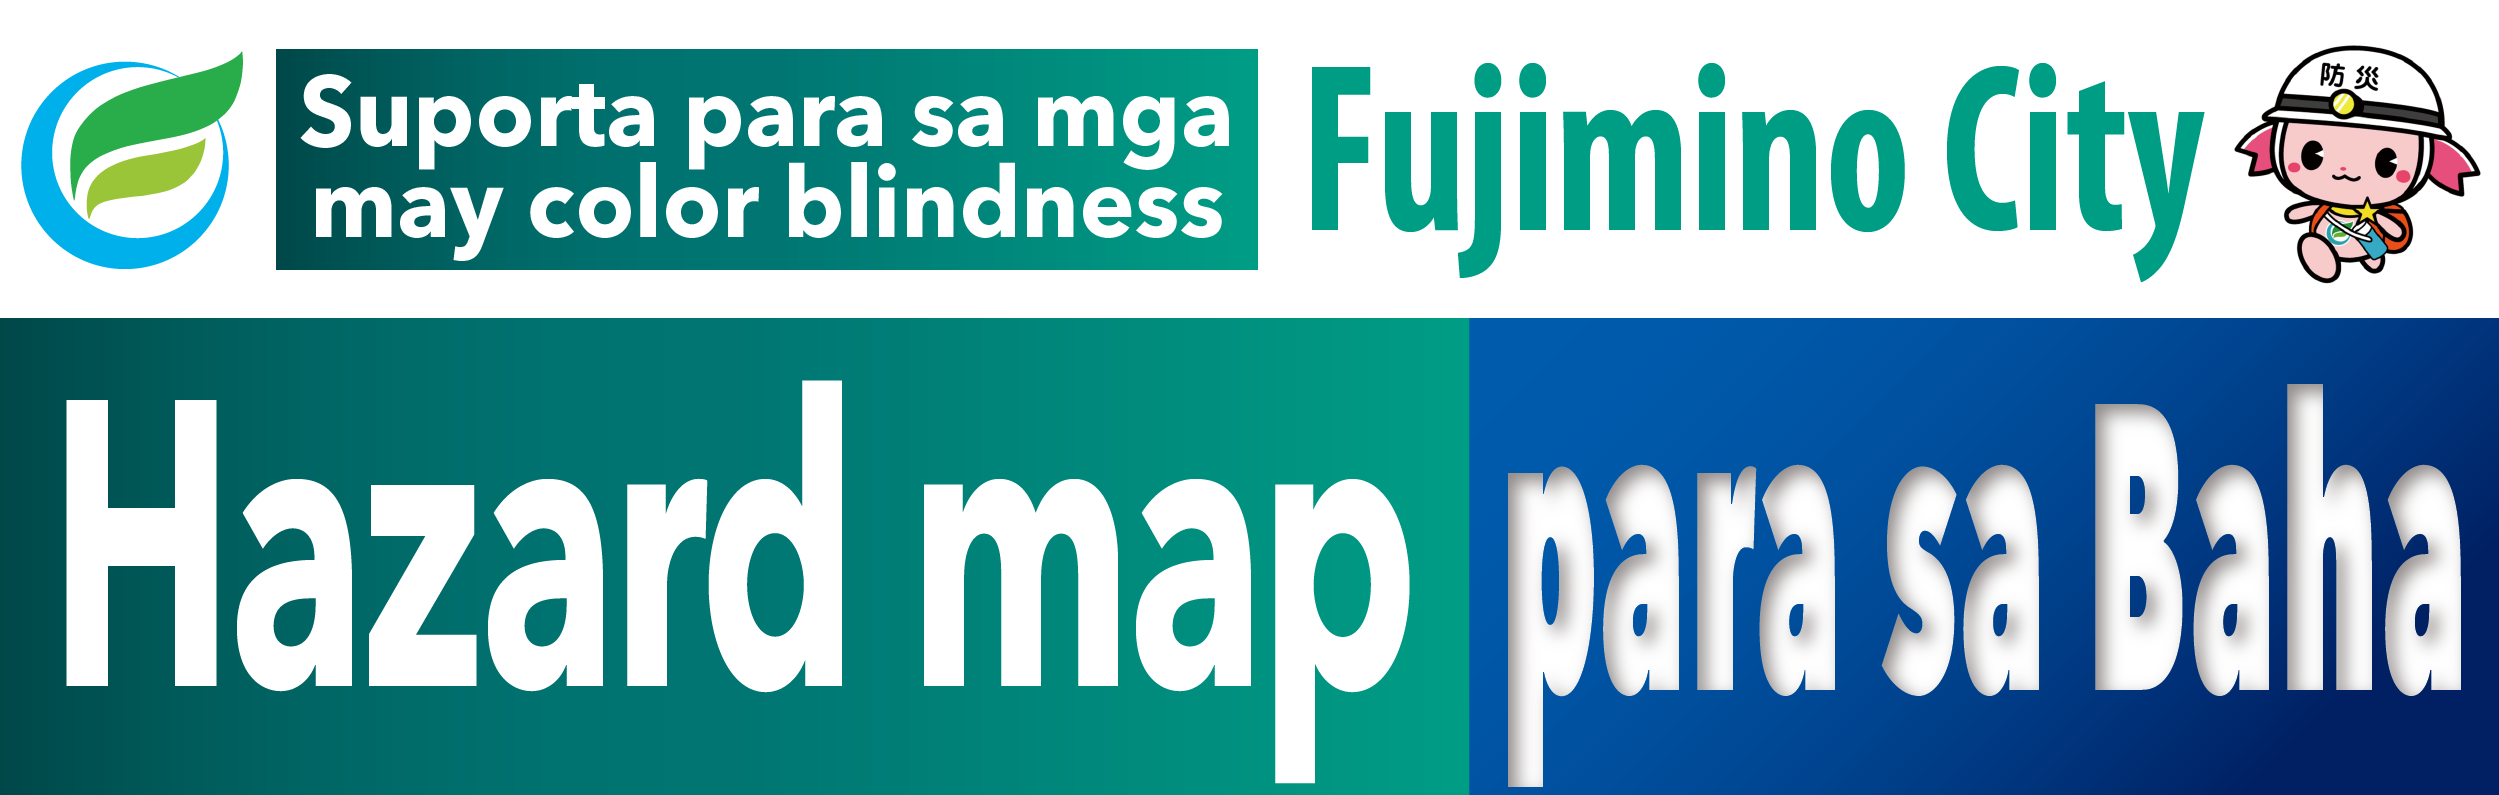 Fujimino City Hazard map para sa Baha